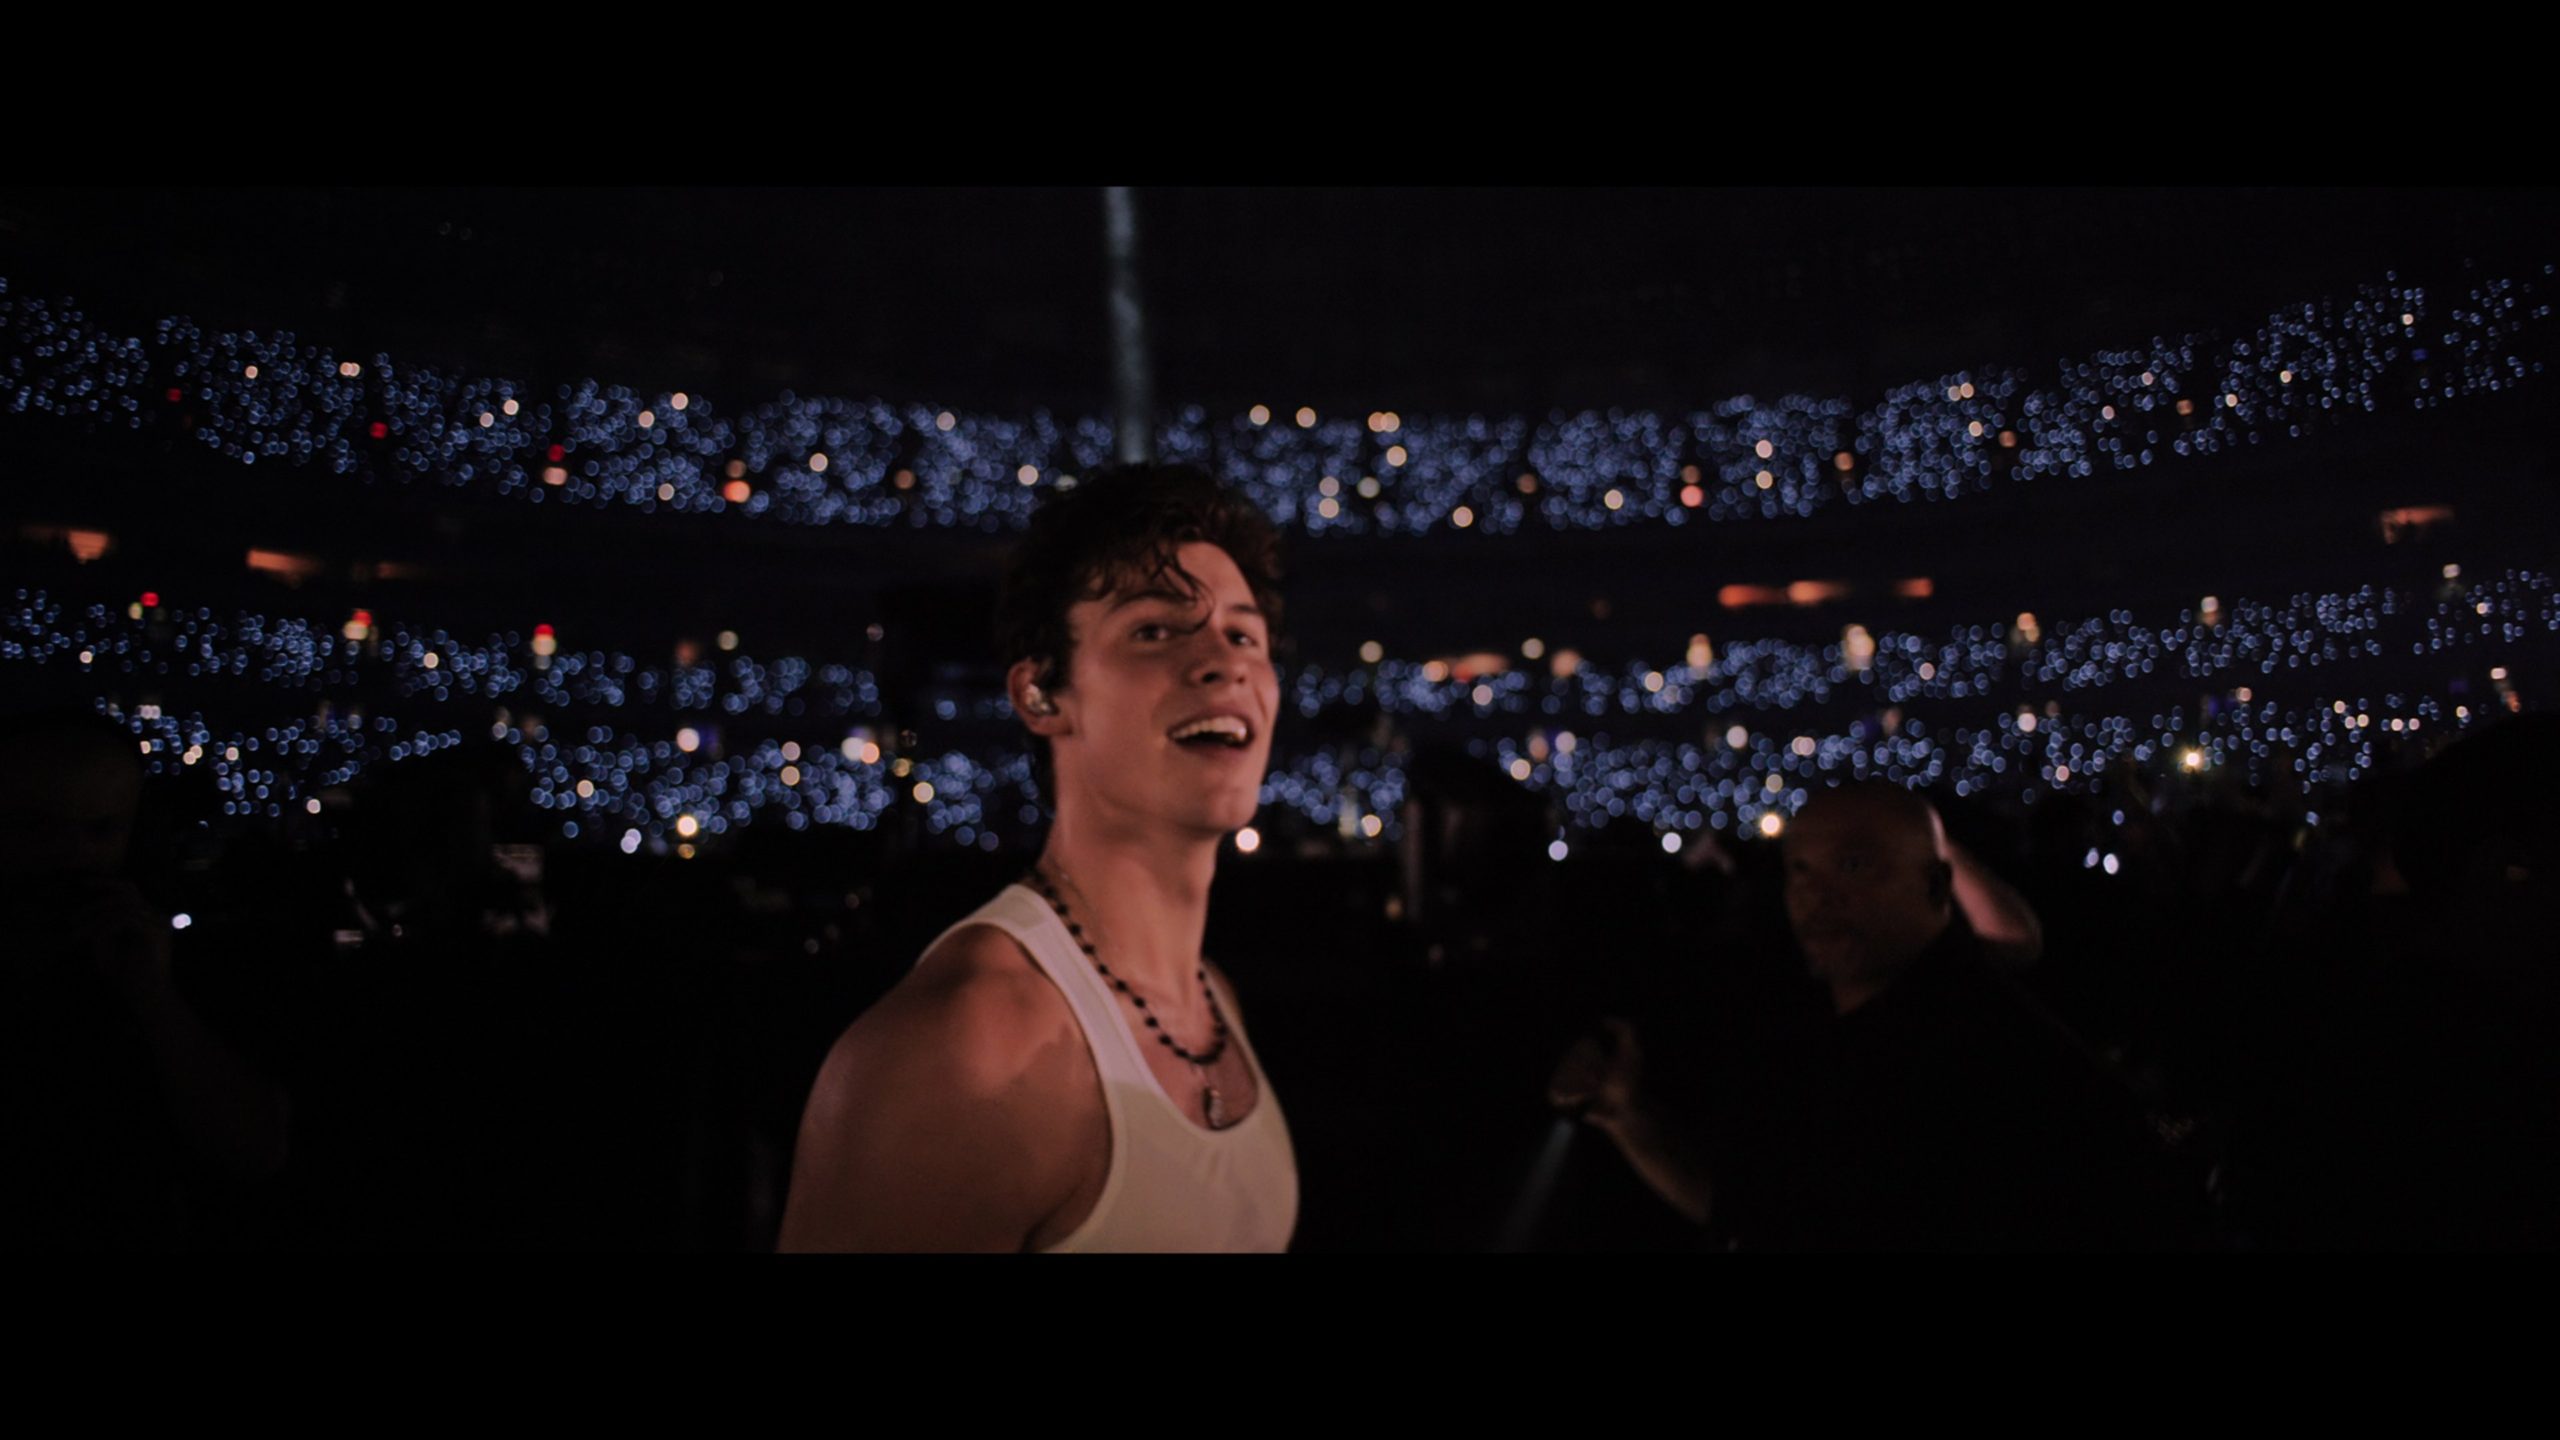 A imagem mostra Shawn Mendes com uma regata branca e cabelos curtos. Ele usa um colar de bolinhas pretas e está em frente a uma constelação de luzes.